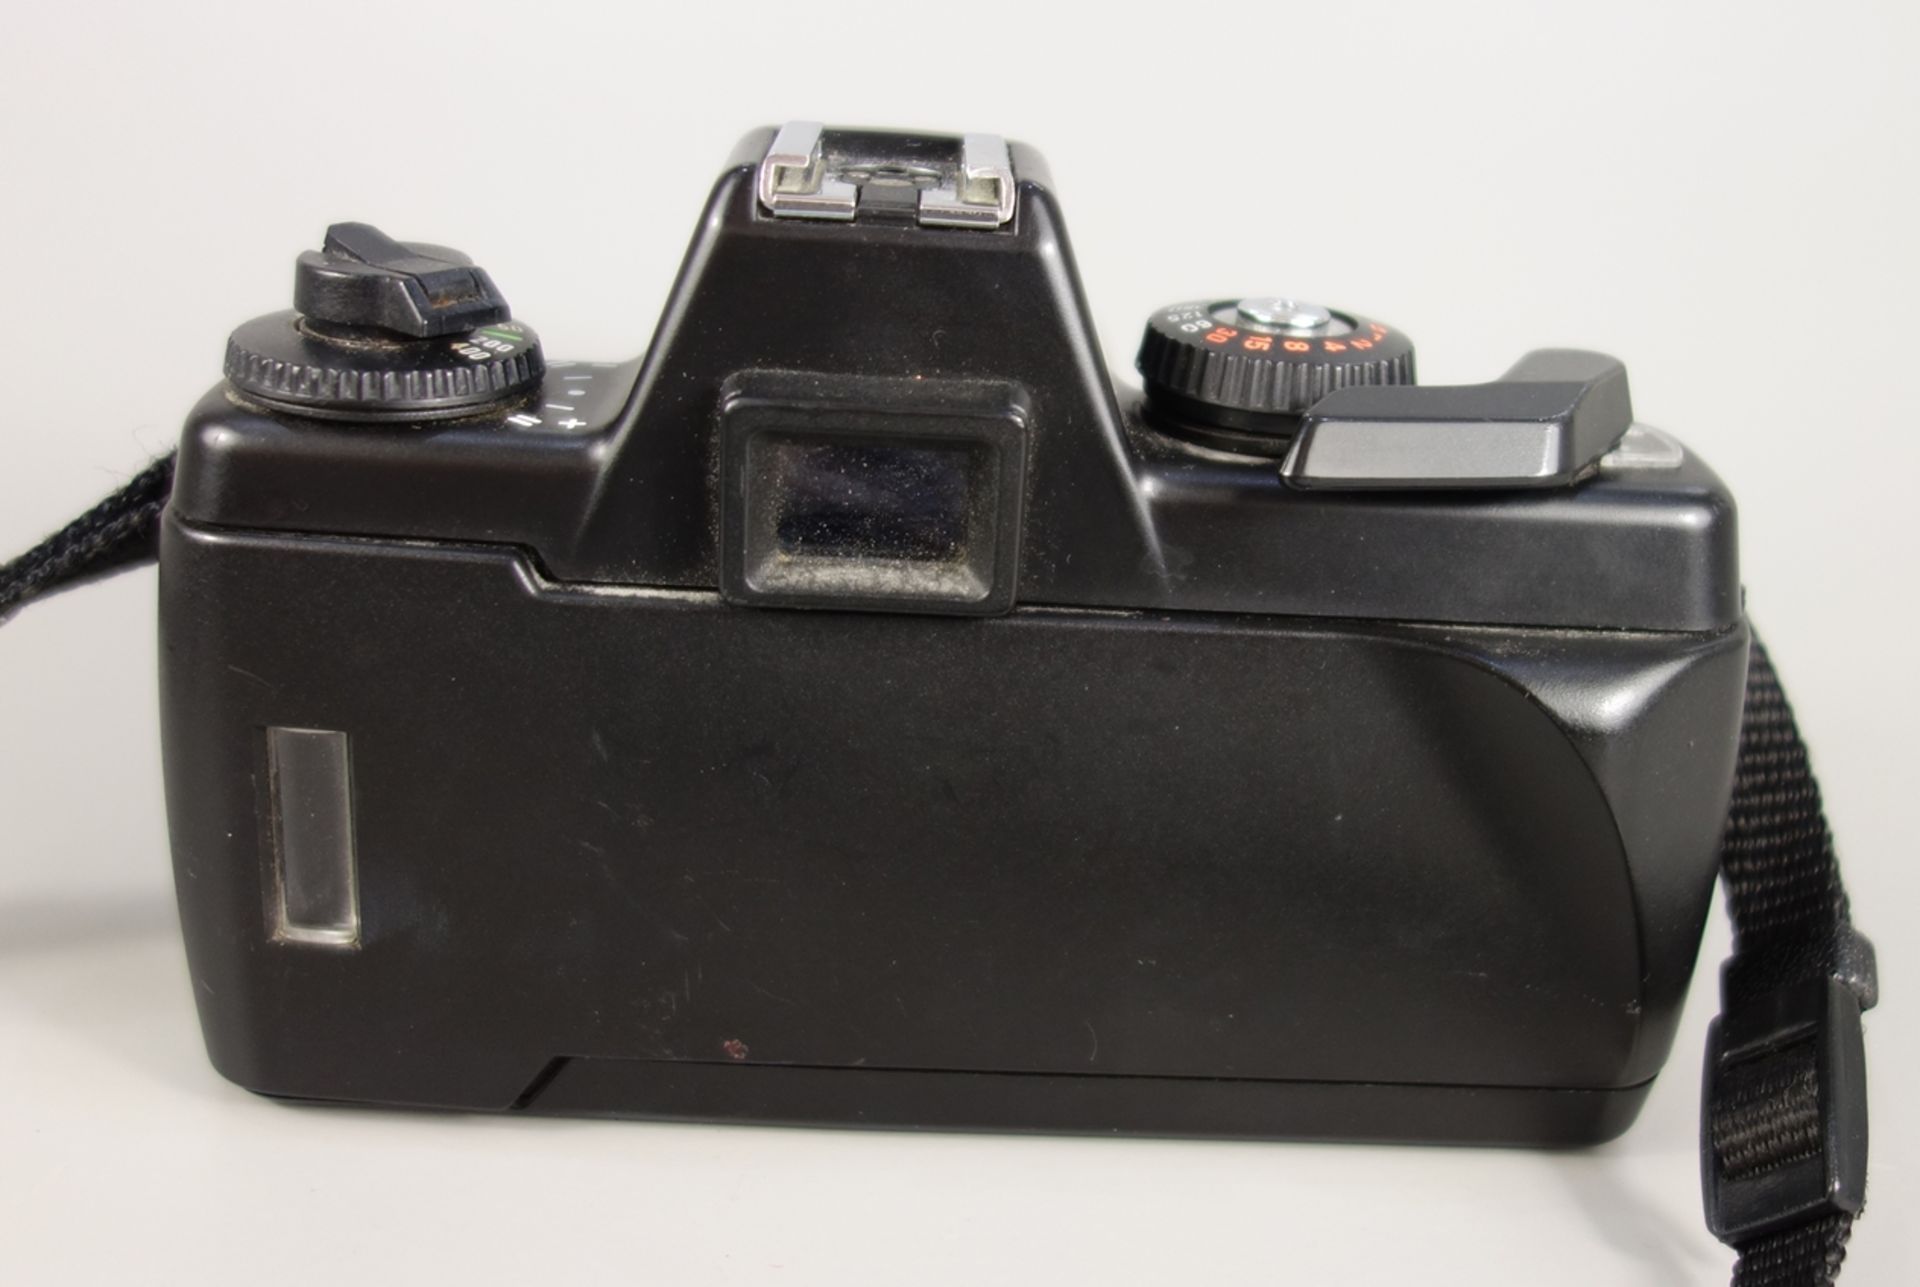 Praktica BX 20s, analoge Spiegelreflexkamera, 1990er Jahre, mit Objektiv Praktika MC Auto Zoom 1:4, - Bild 3 aus 3